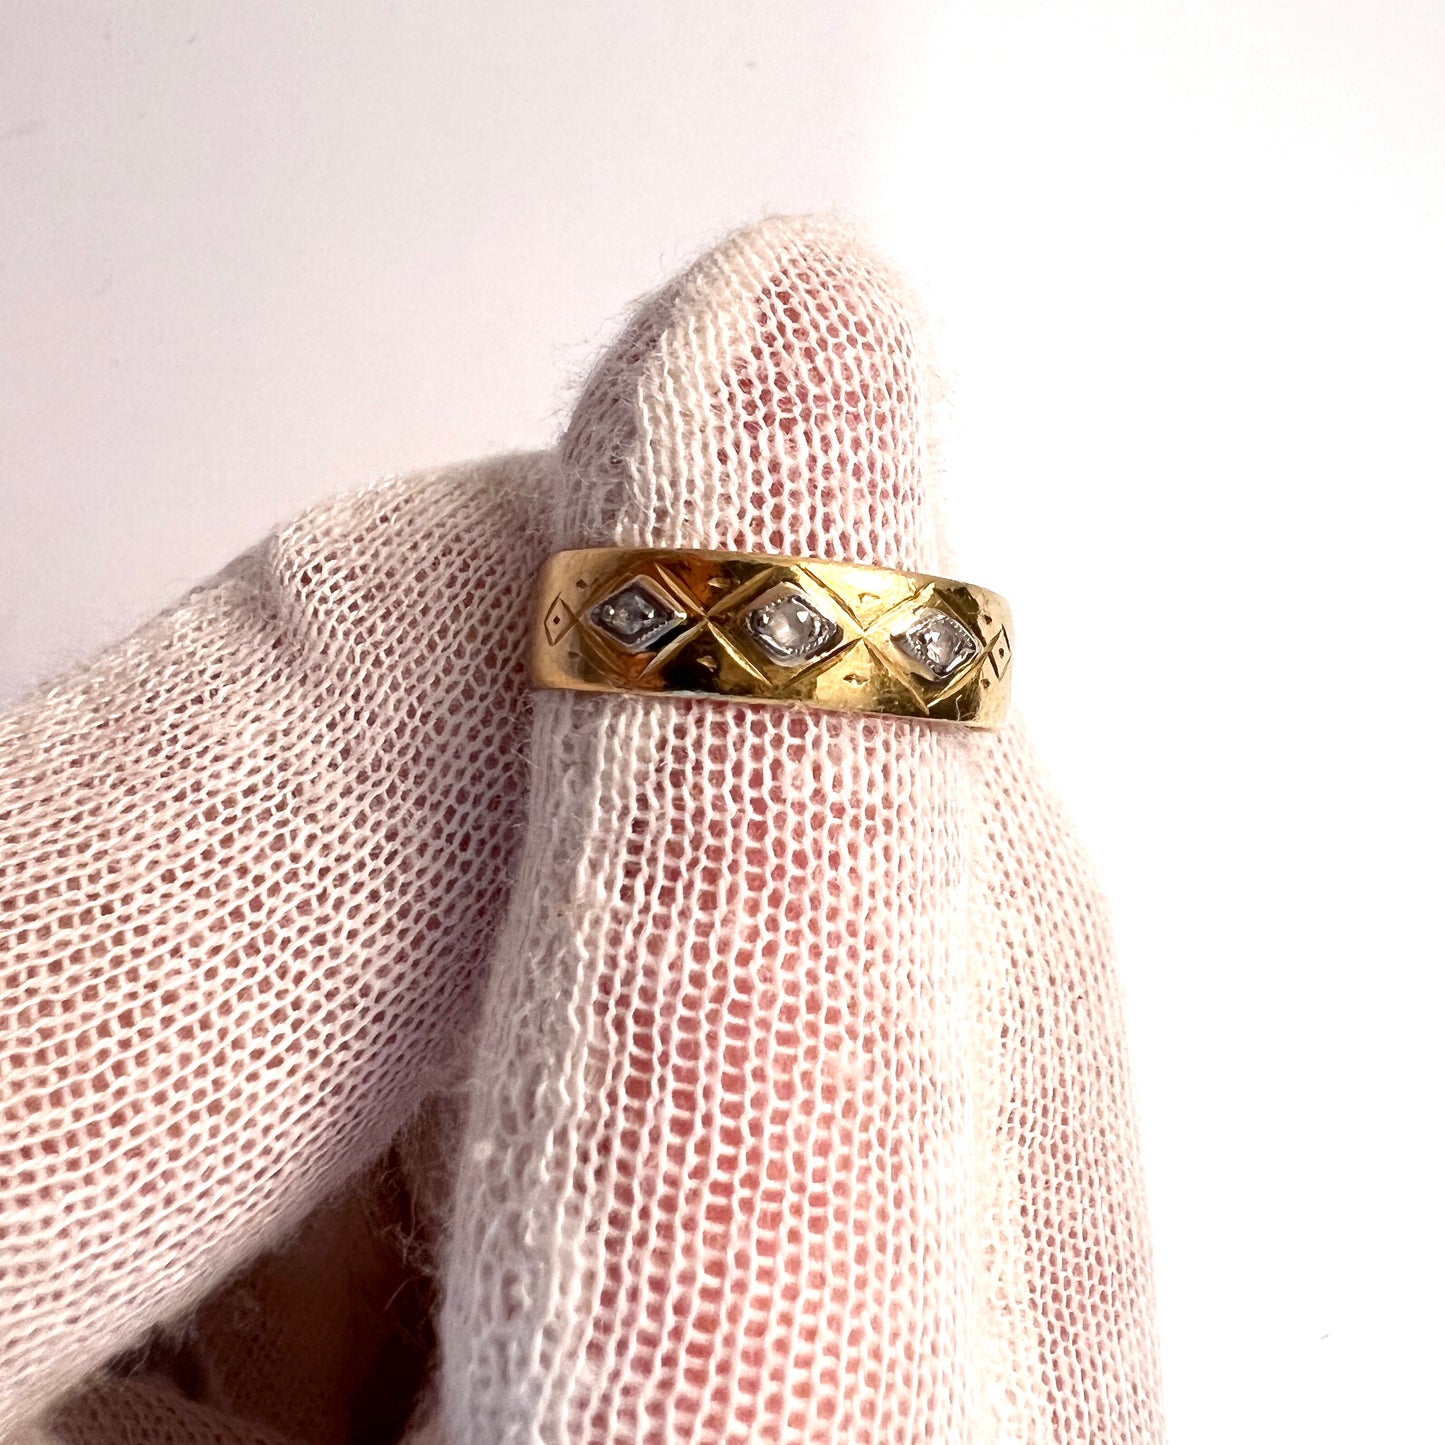 KE Berg Sweden 1890s. Antique 23k Gold Paste Wedding Band Ring.